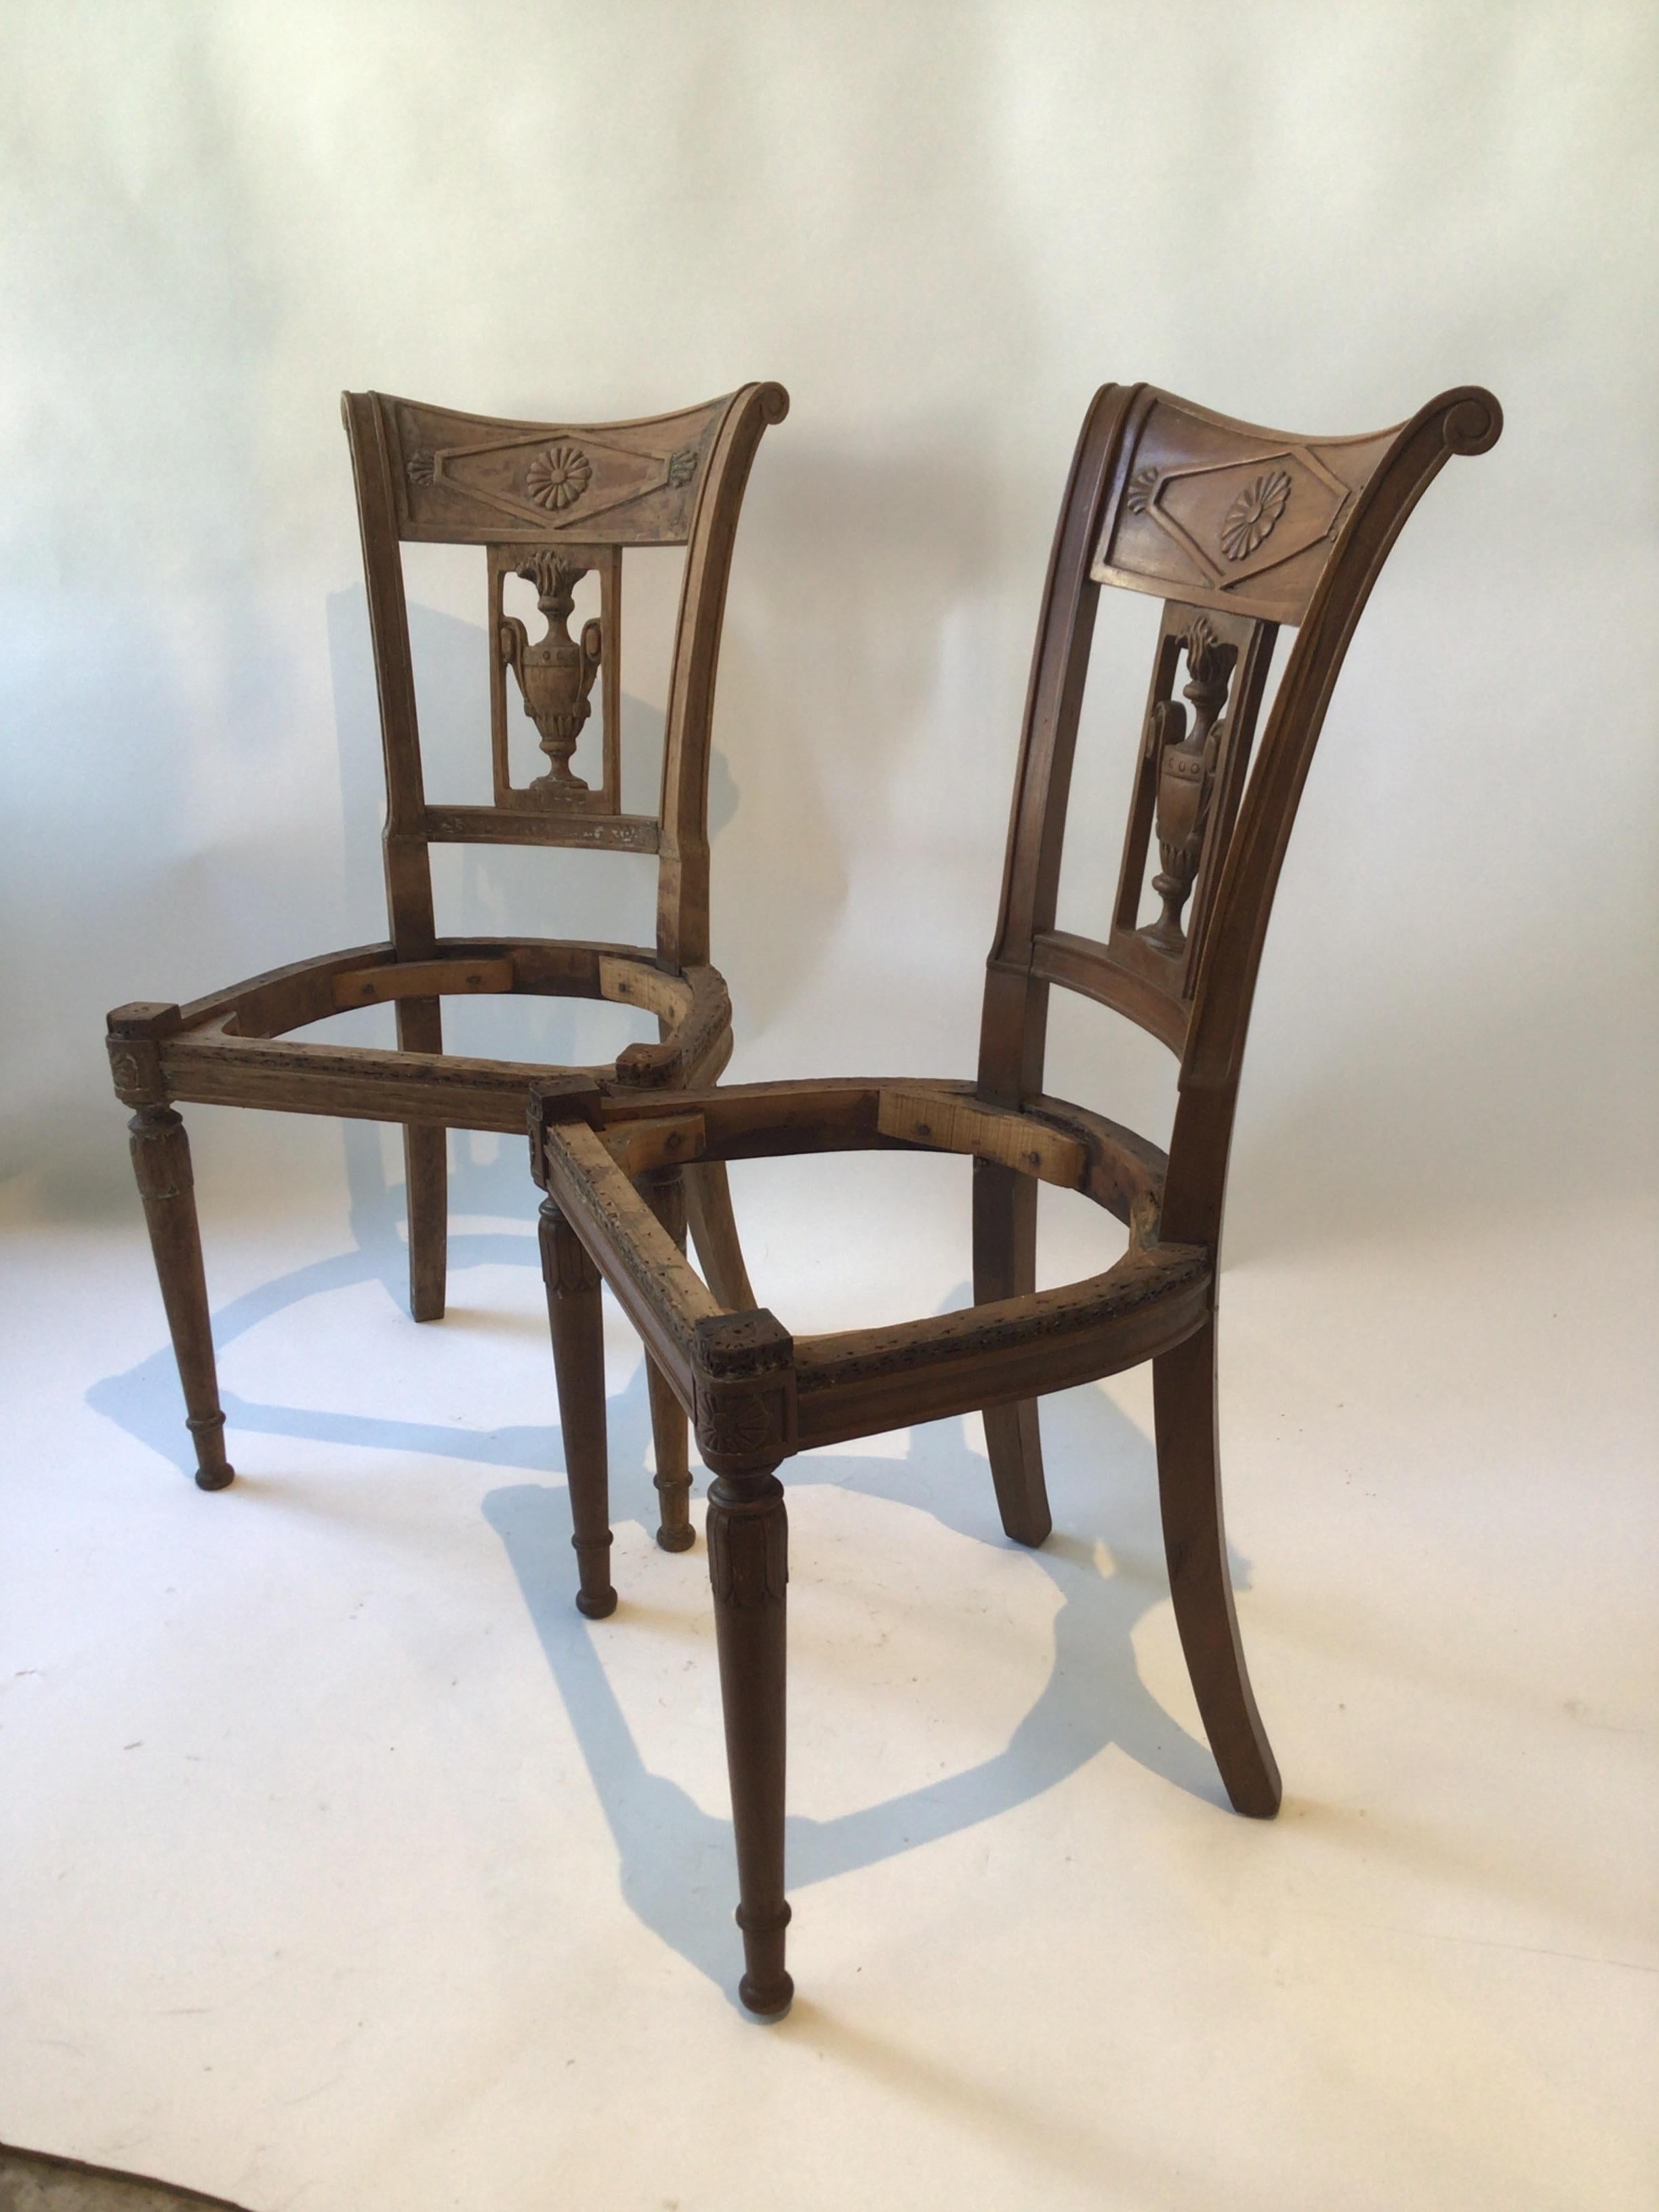 Zwei französische Empire-Sessel aus den 1850er Jahren. Handgeschnitzt.